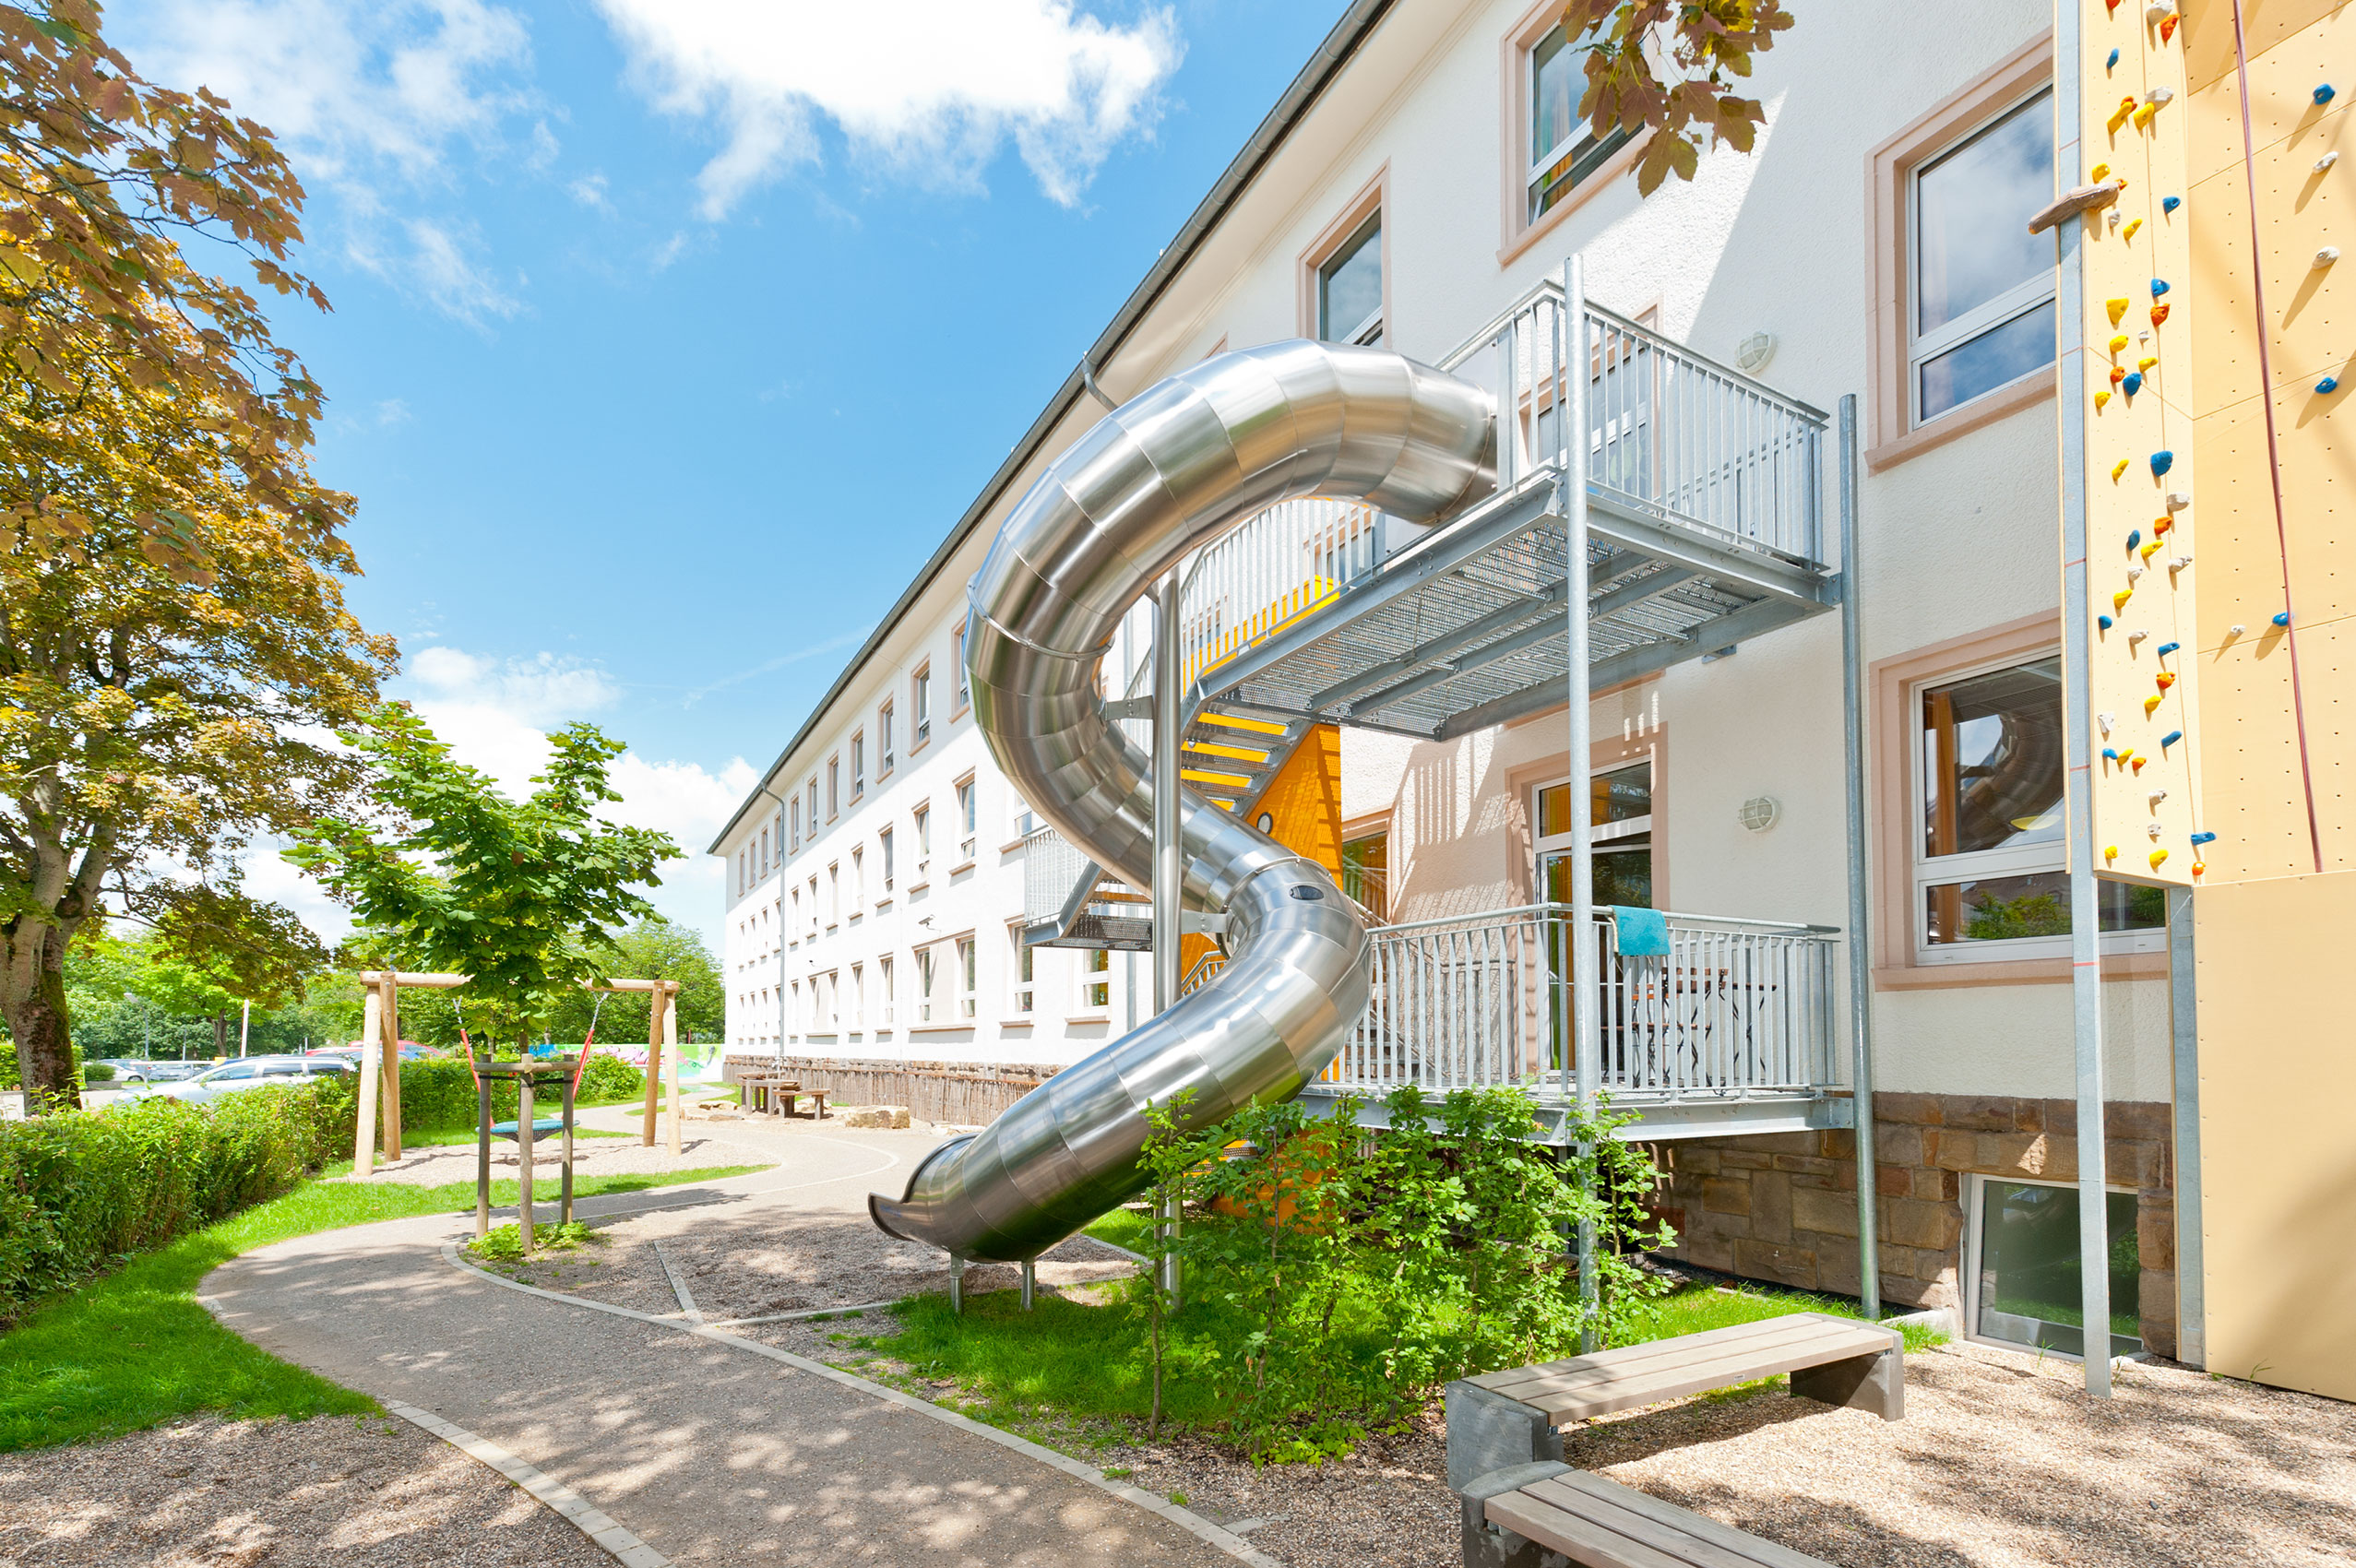 atlantics stainless steel slides maerkische clinics luedenscheid evacuation tubes 117142 stairs